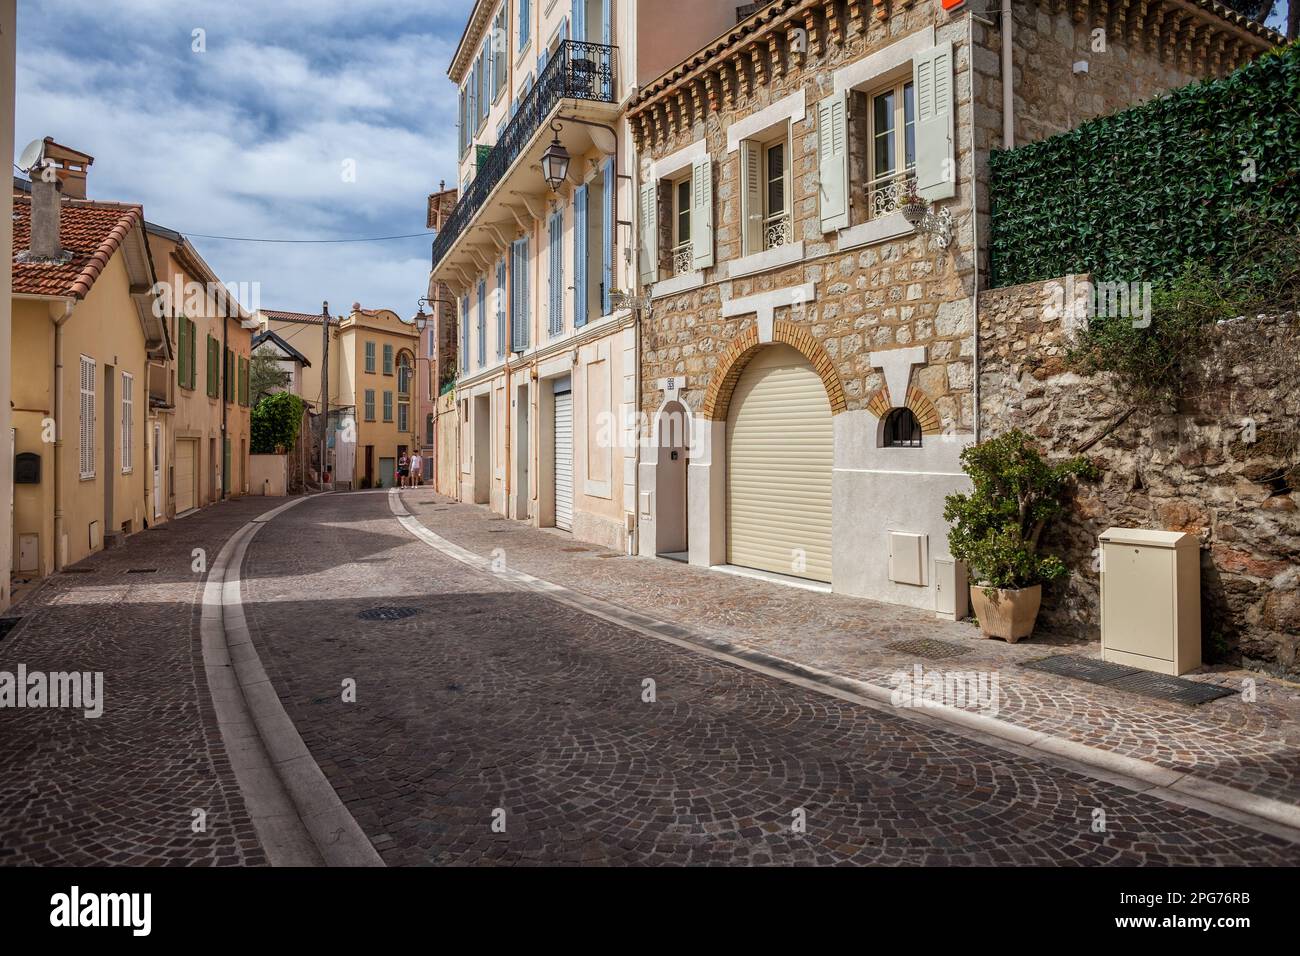 Rue pavée sinueuse dans la vieille ville (le Suquet) de Cannes en France. Banque D'Images